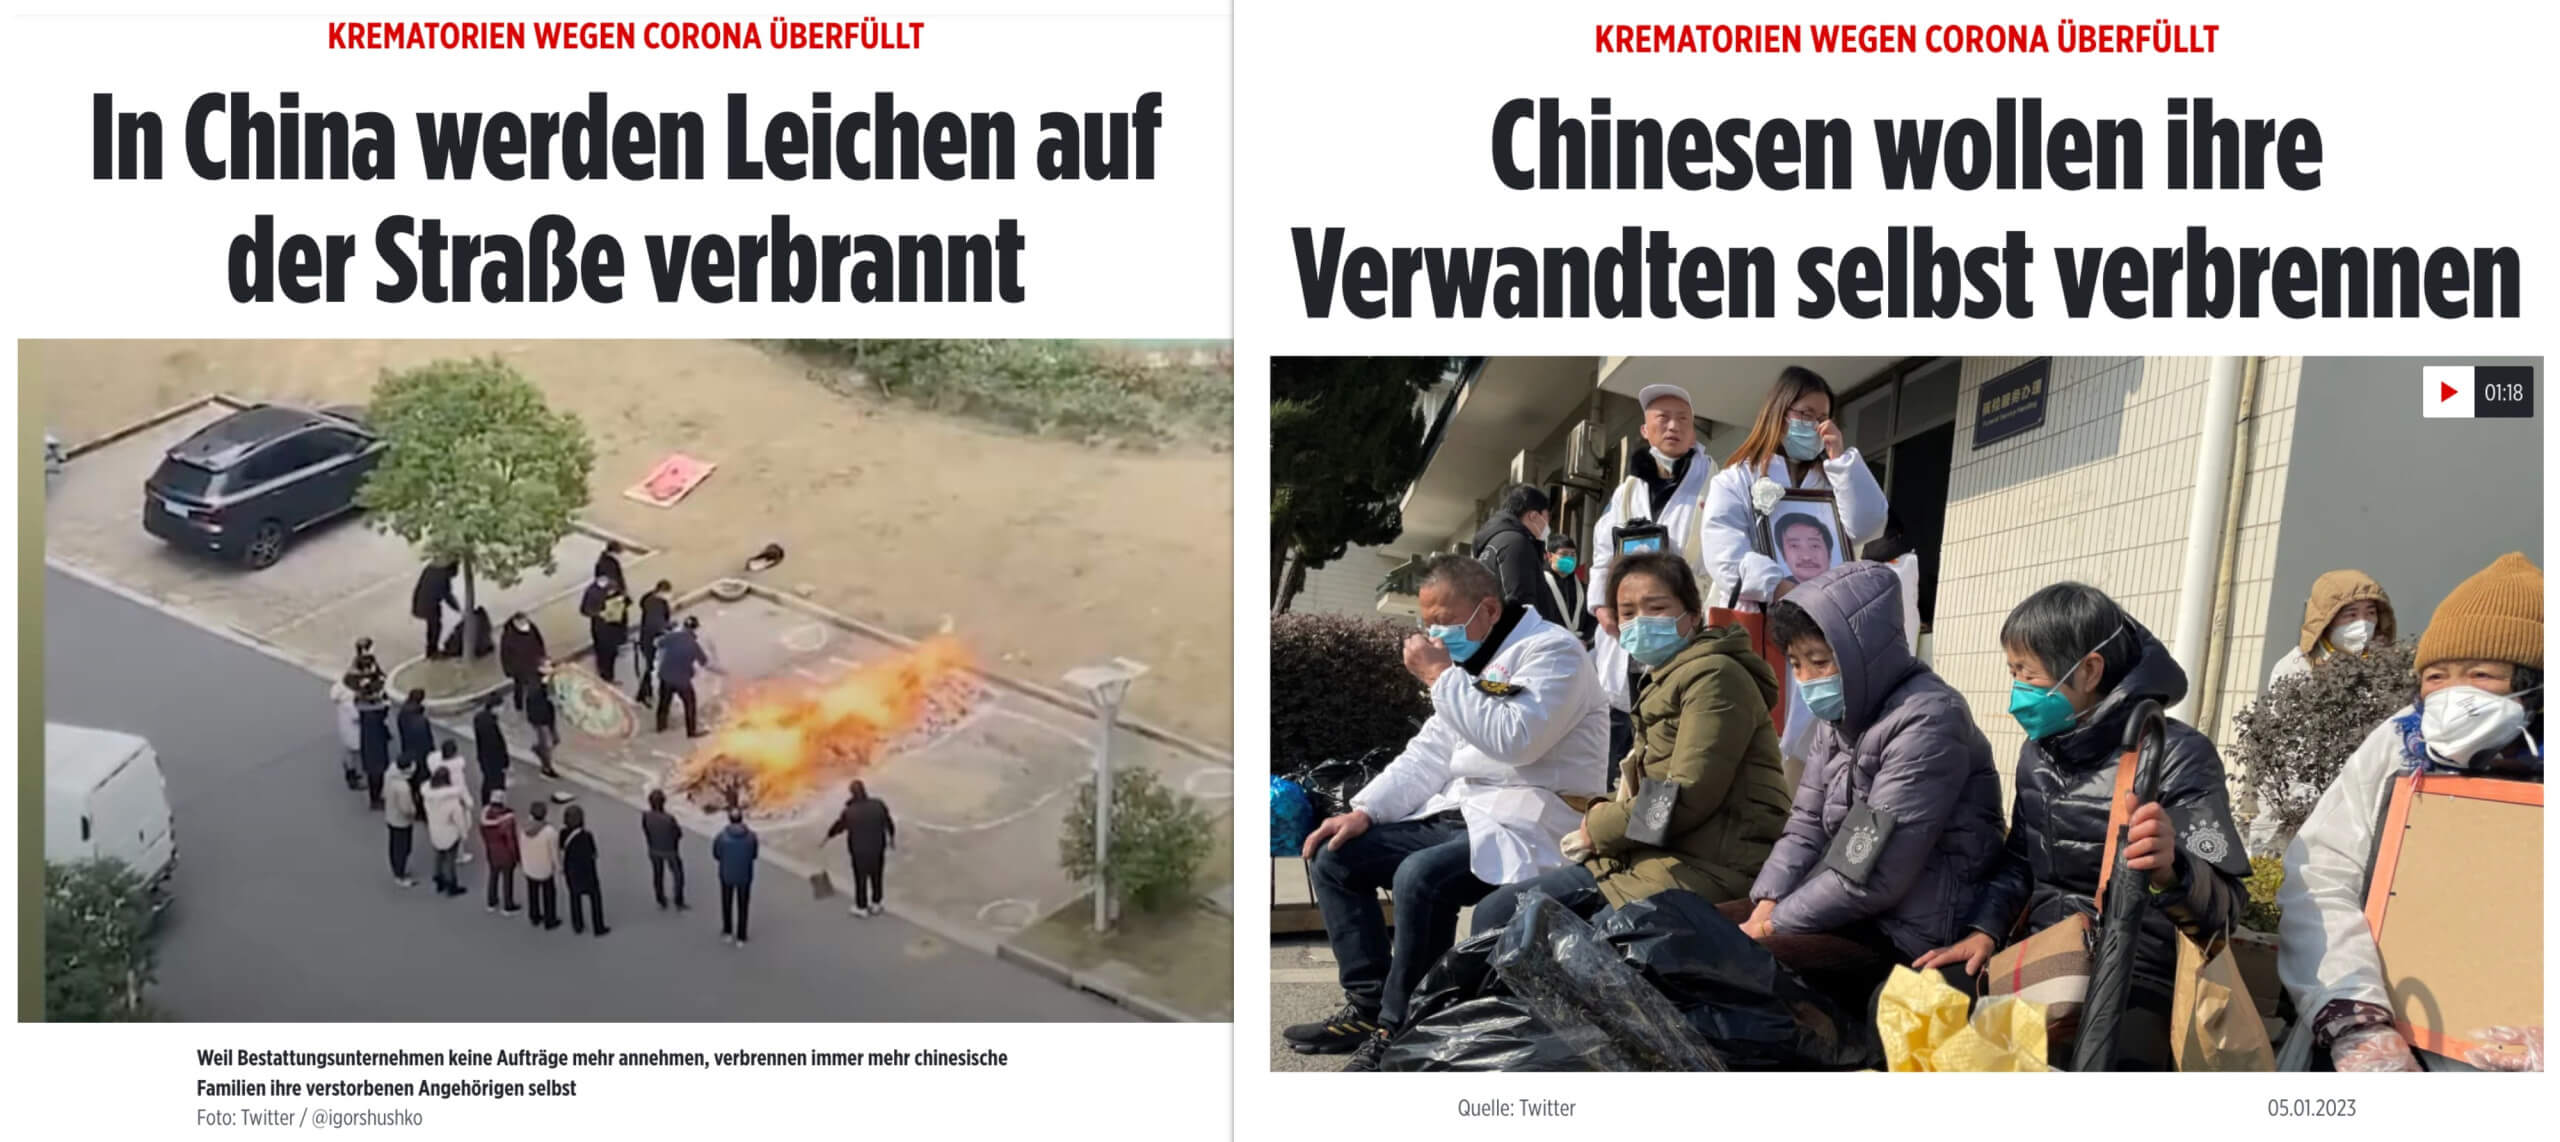 Bild änderte Überschrift des Artikels in „Chinesen wollen ihre Angehörigen selbst verbrennen“